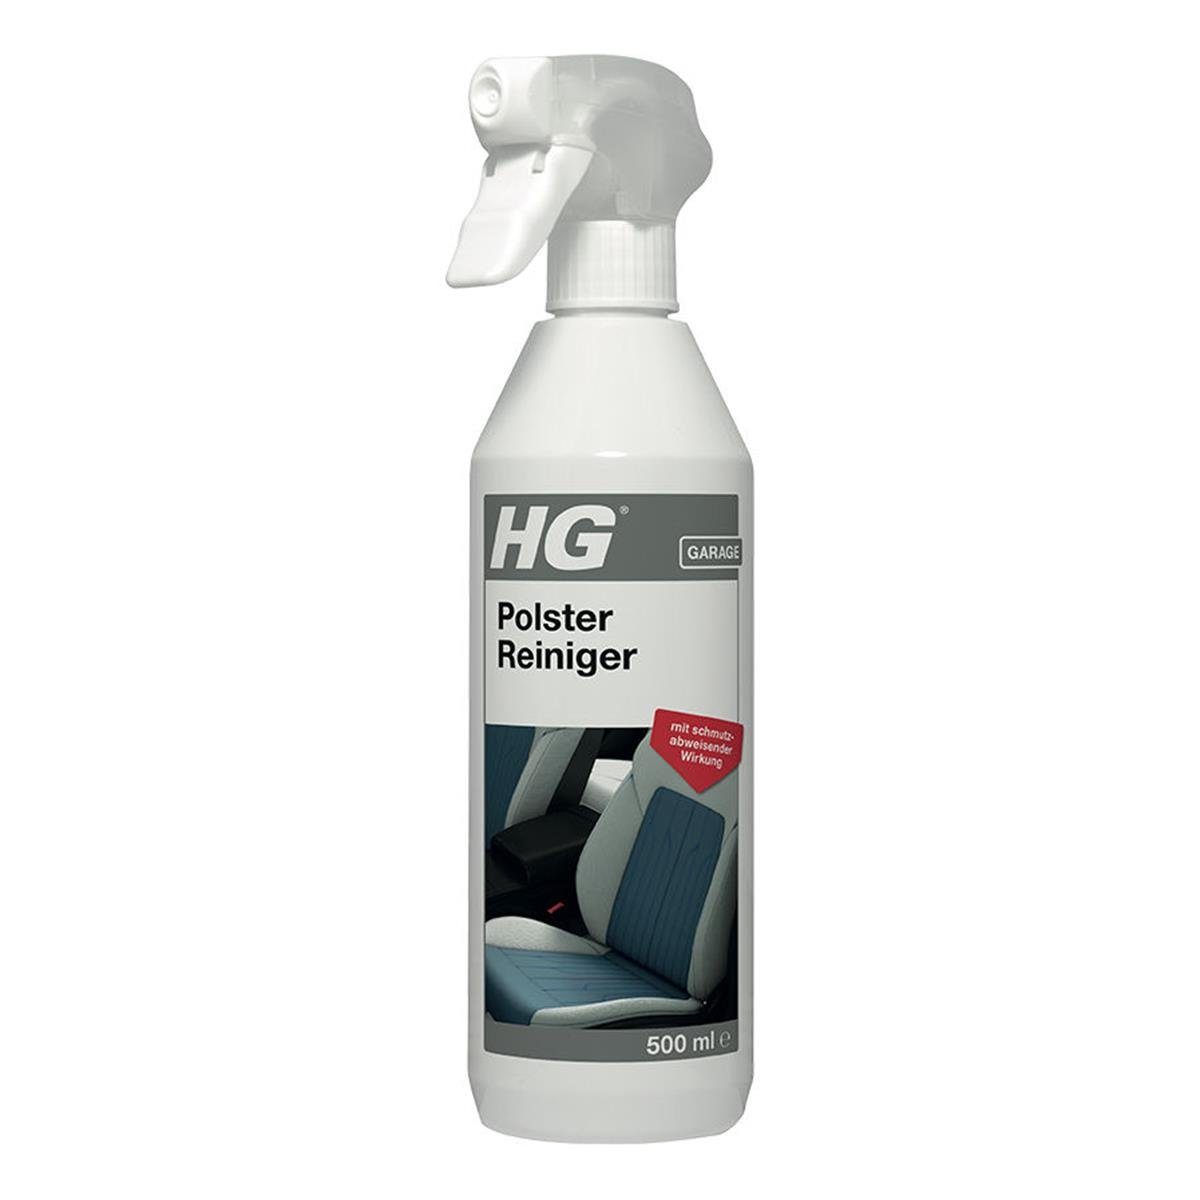 HG HG Polster Reiniger 500ml - Polsterreiniger für Autos (1er Pack) Auto-Reinigungsmittel